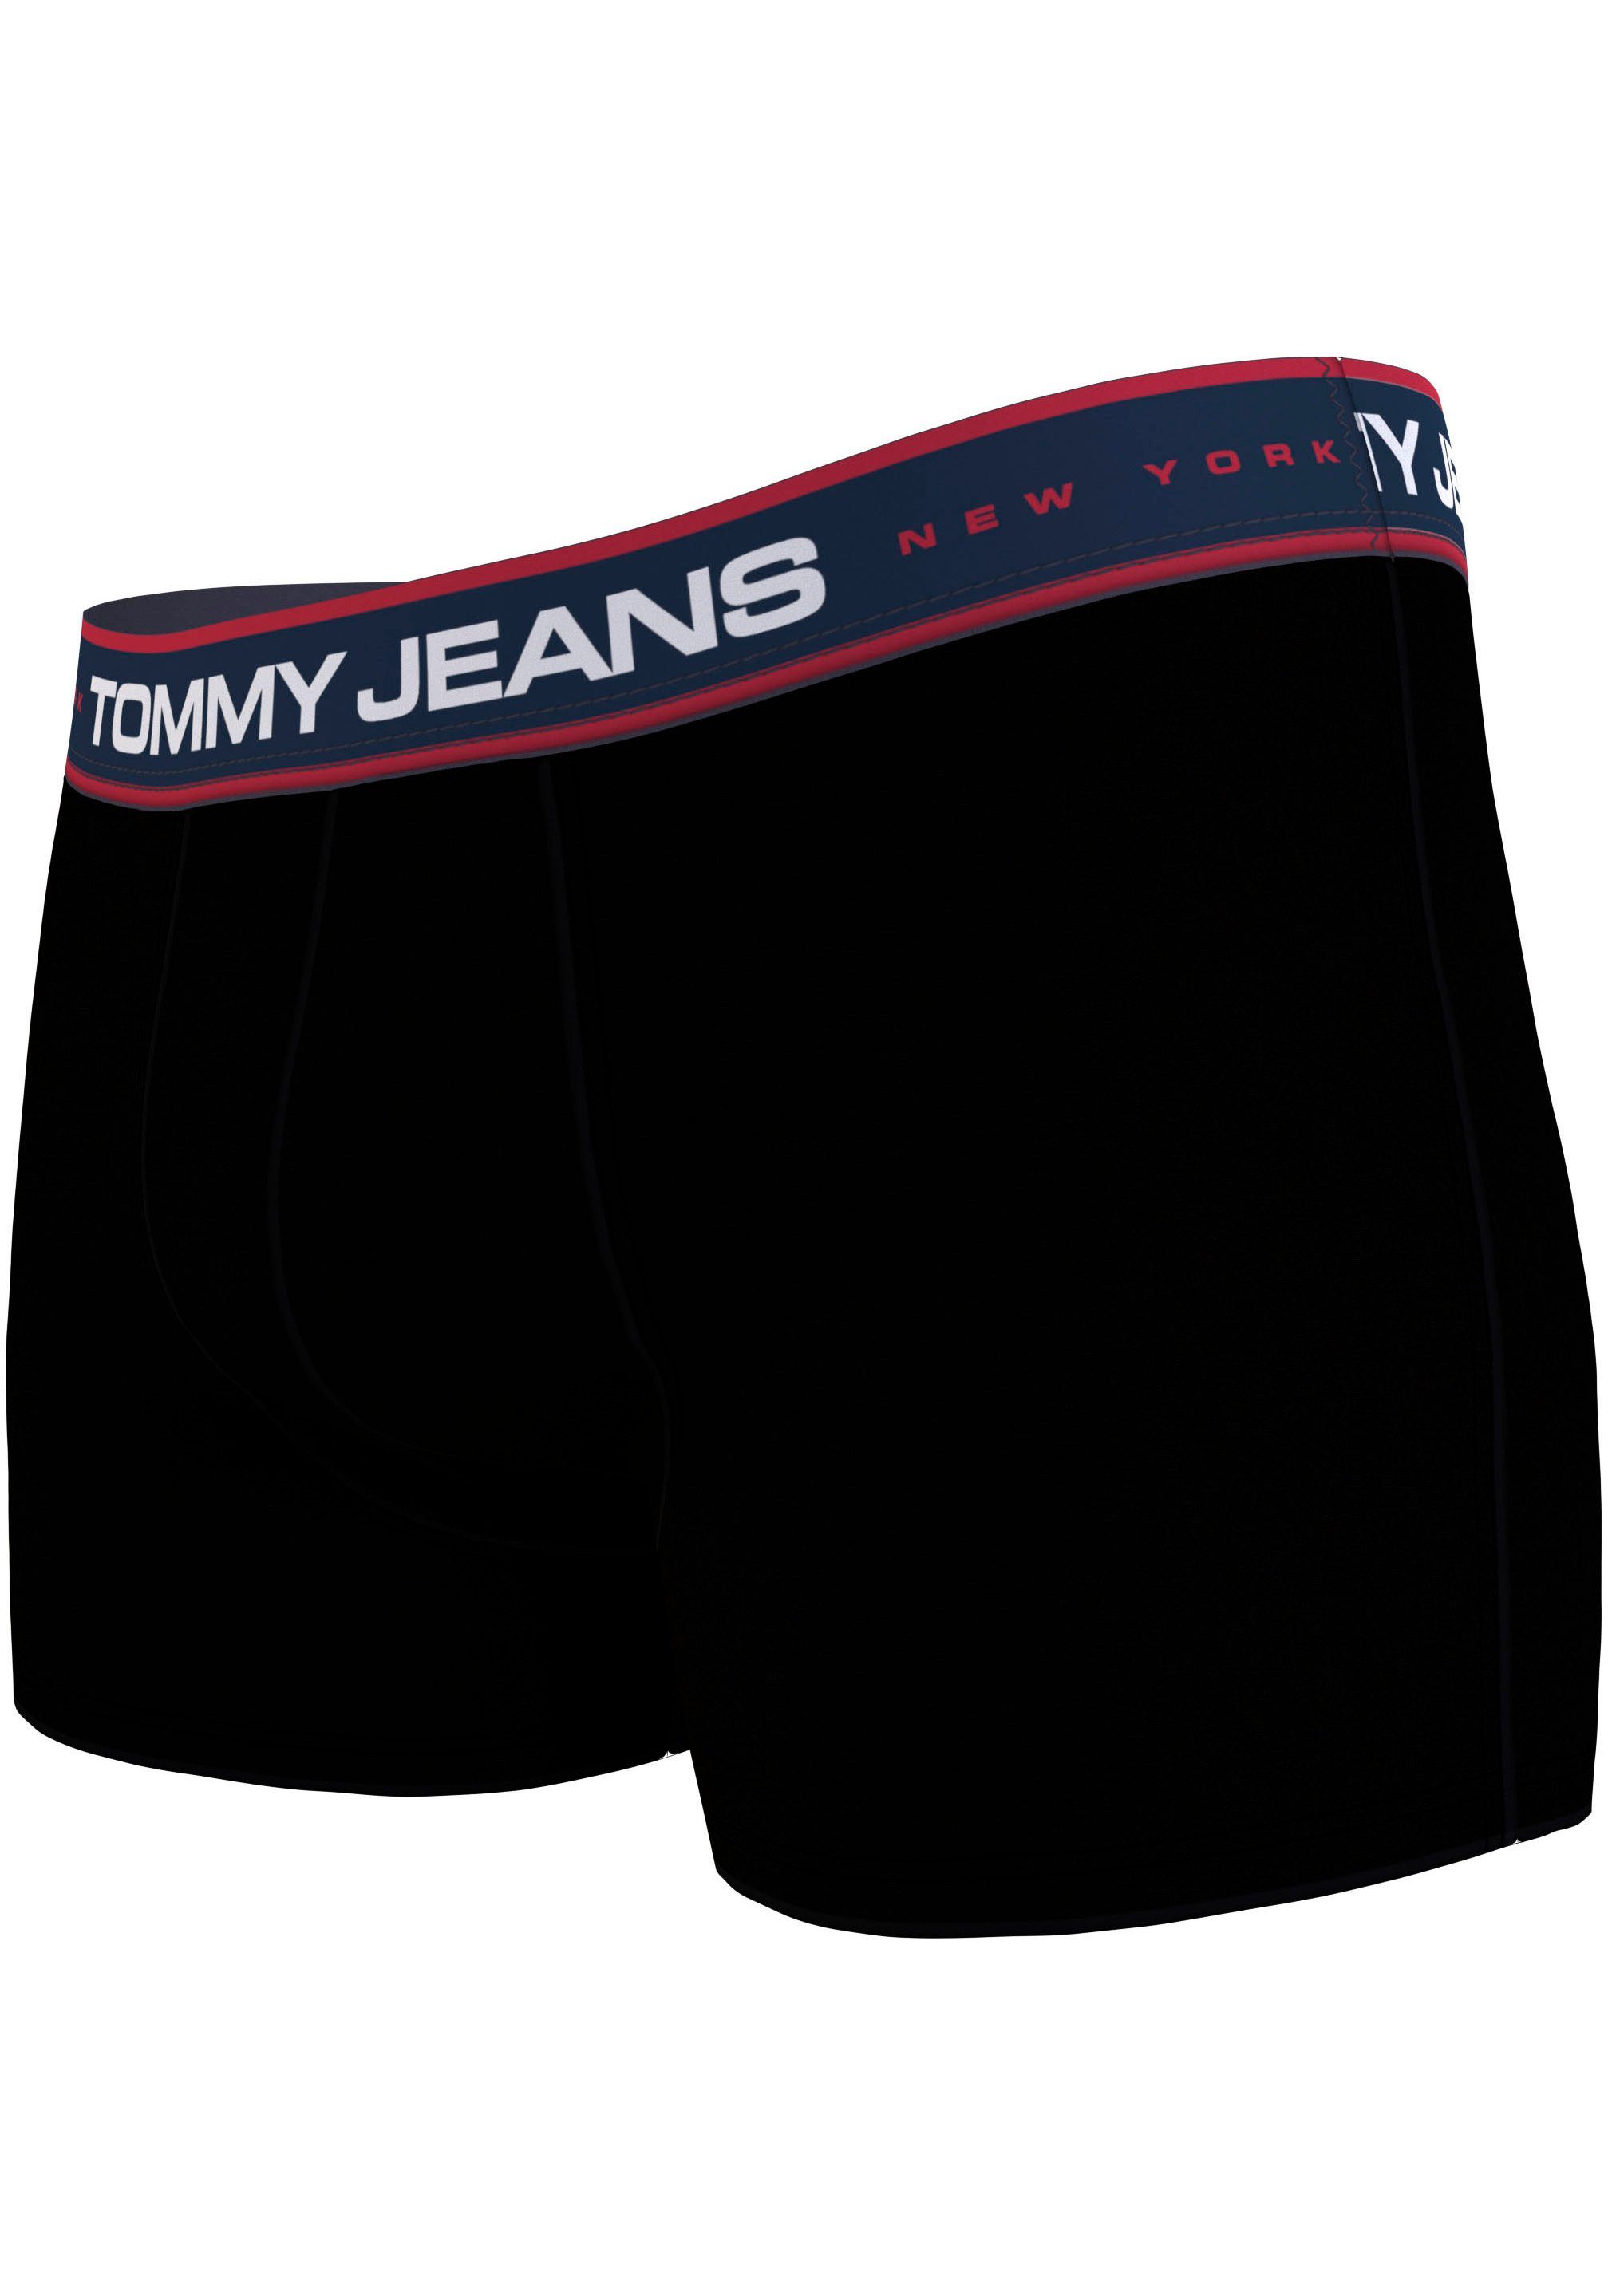 black/ 3er-Pack) 3-St., black/ Tommy mit Logo Trunk black Underwear Hilfiger Taillenbund (Packung, am TRUNK 3P